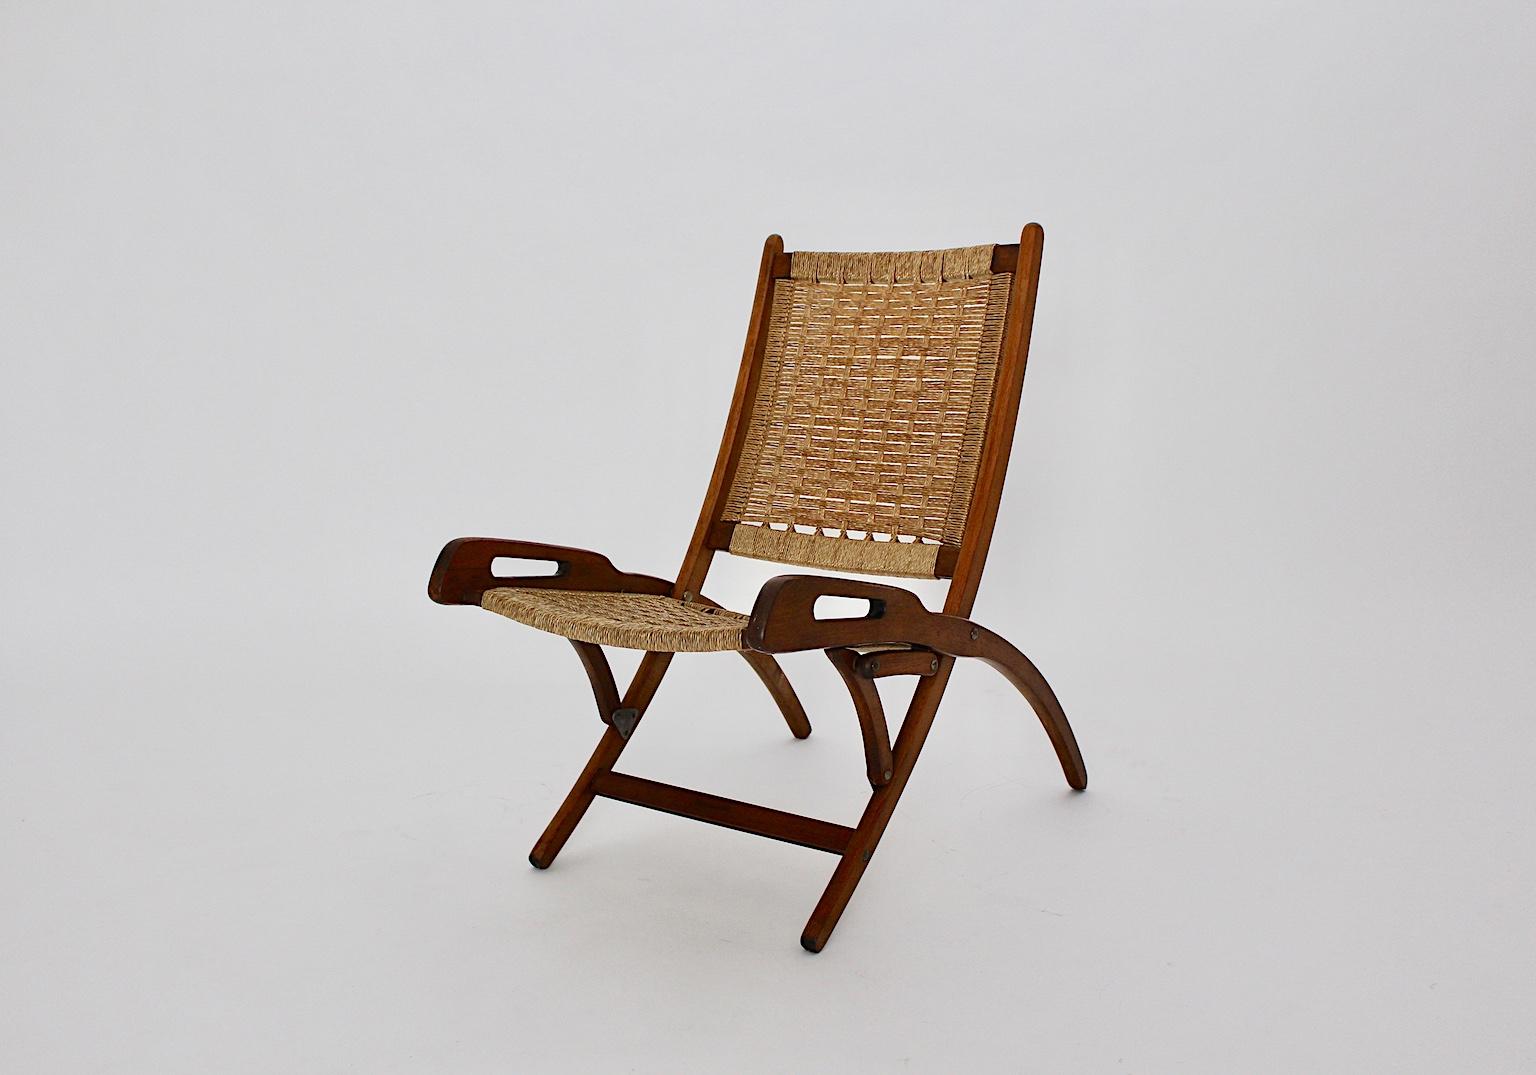 Mid-Century Modern Vintage Buche Klappstuhl oder Sessel, die in den 1960er Jahren in Italien hergestellt wurde. Er besteht aus einer massiven, braun gebeizten und lackierten Buchenholzkonstruktion, während Sitz und Rückenlehne aus geflochtenen